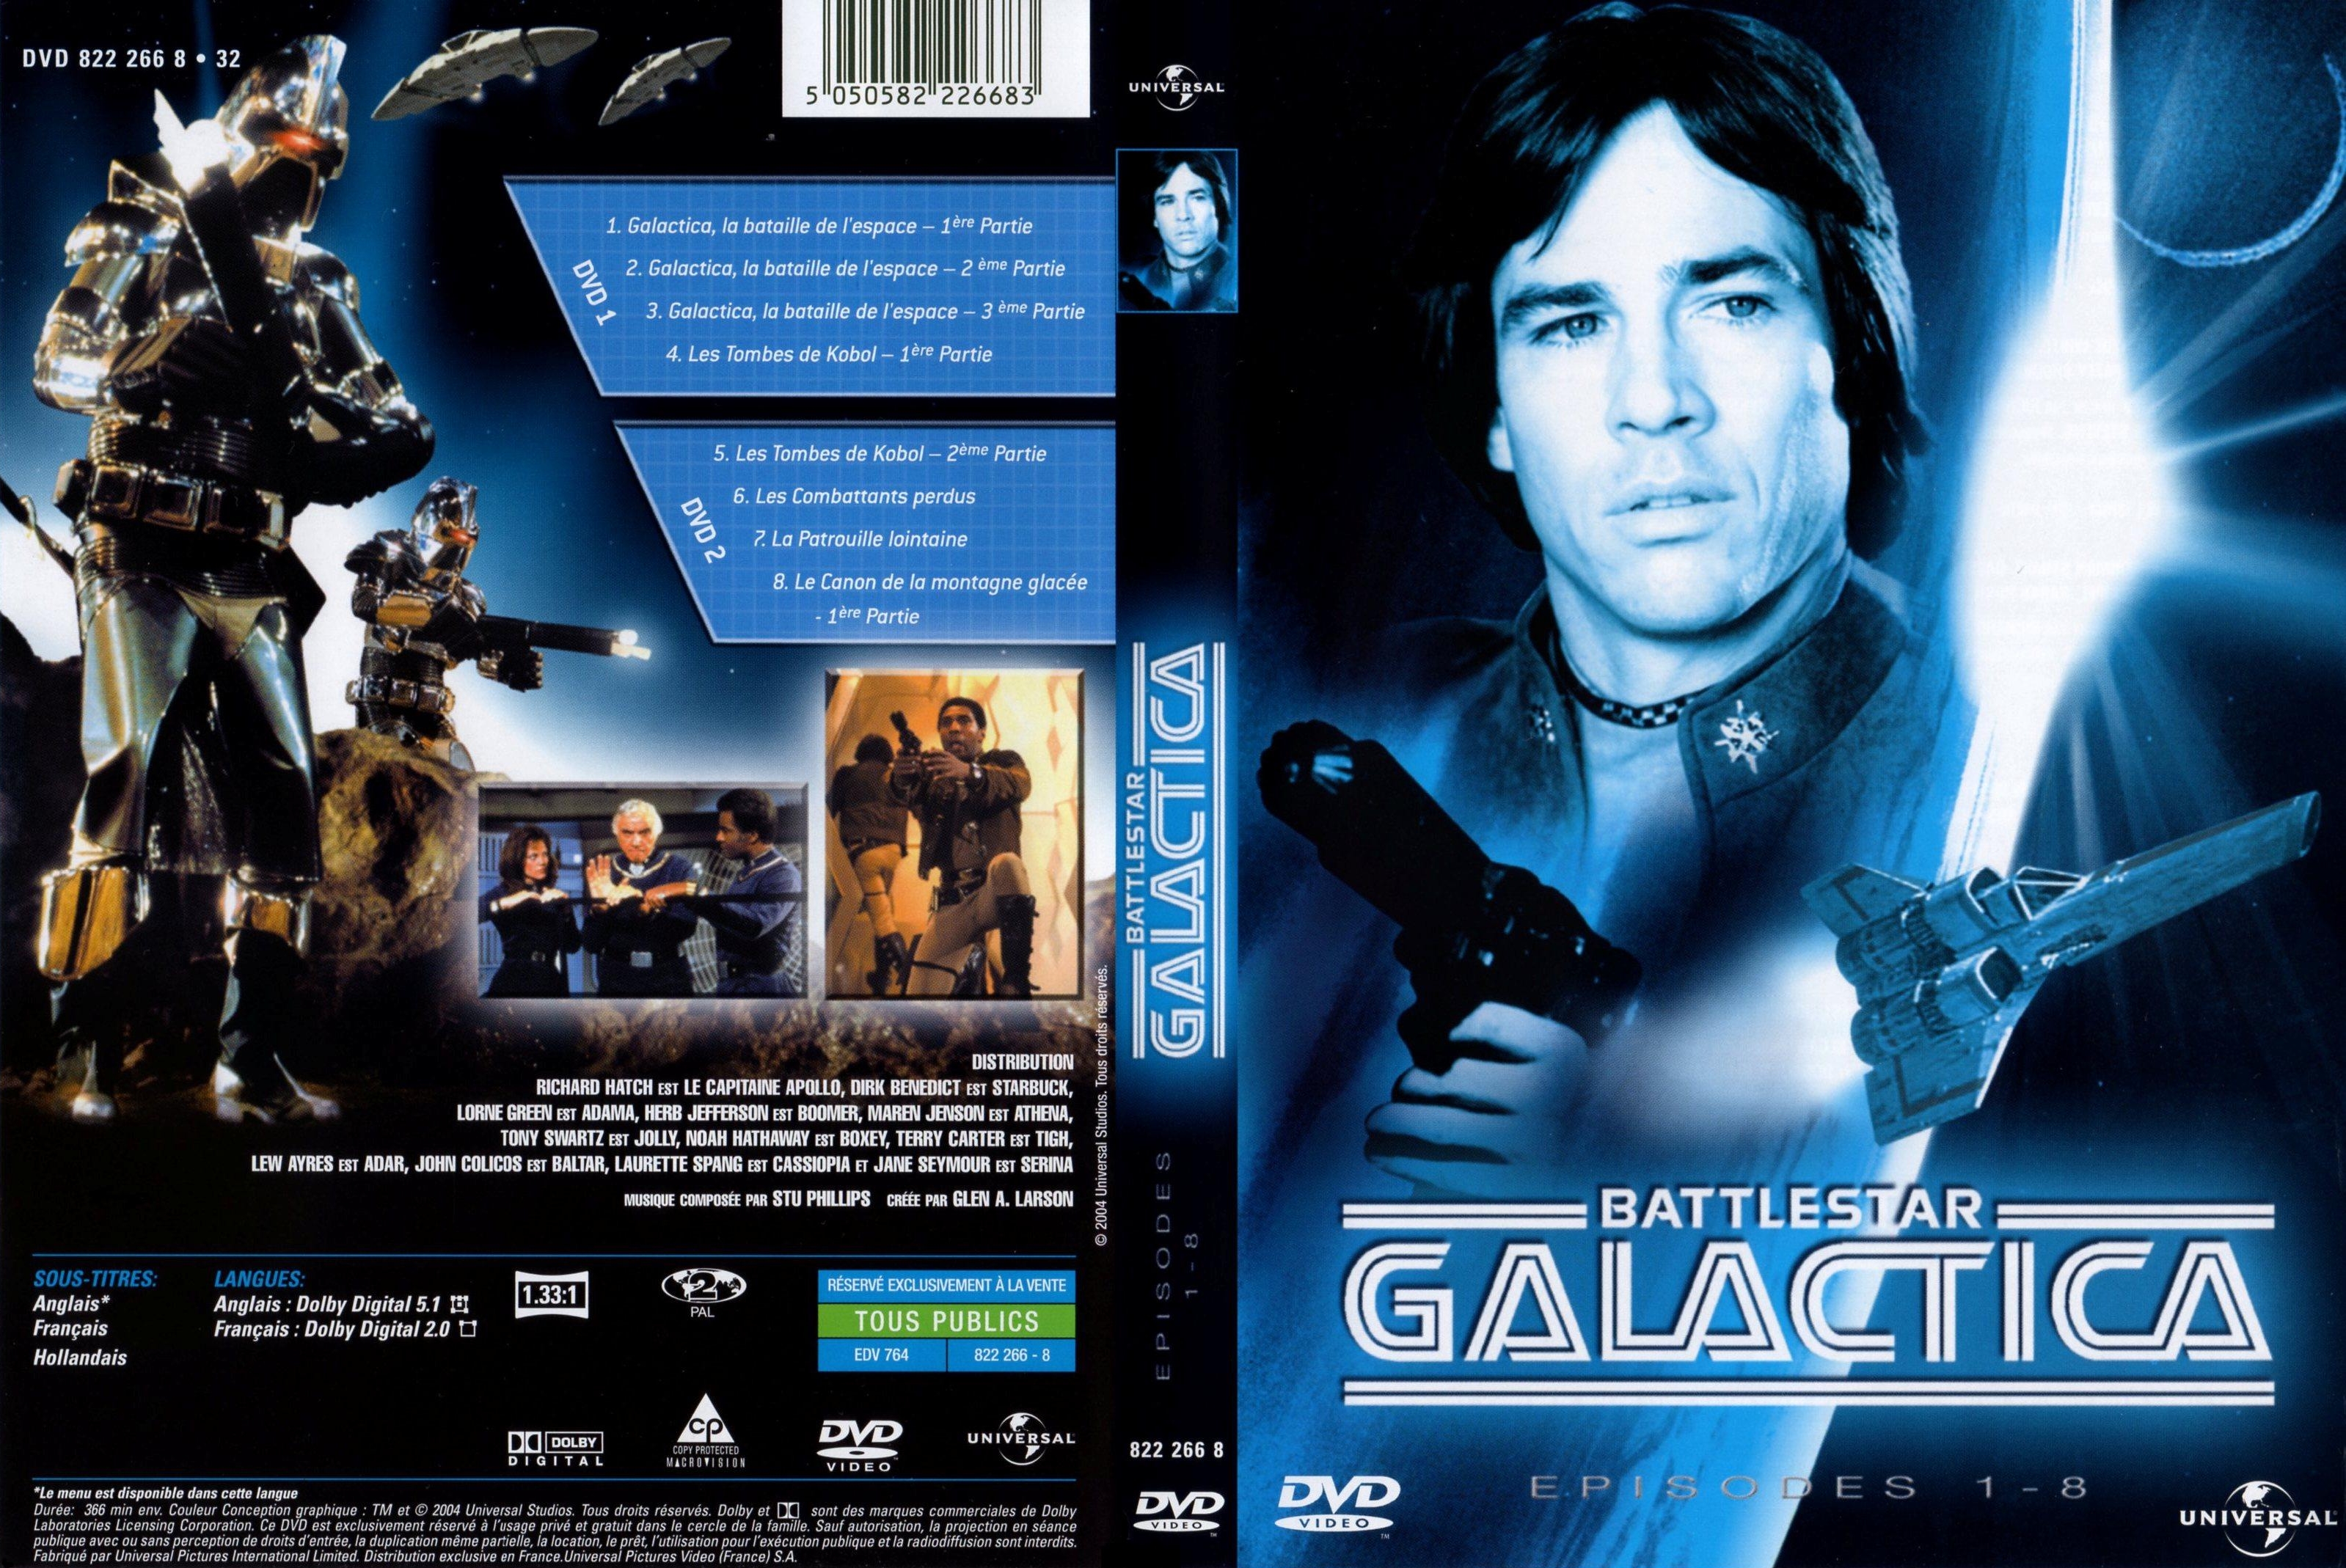 Jaquette DVD Battlestar galactica DVD 1 et 2